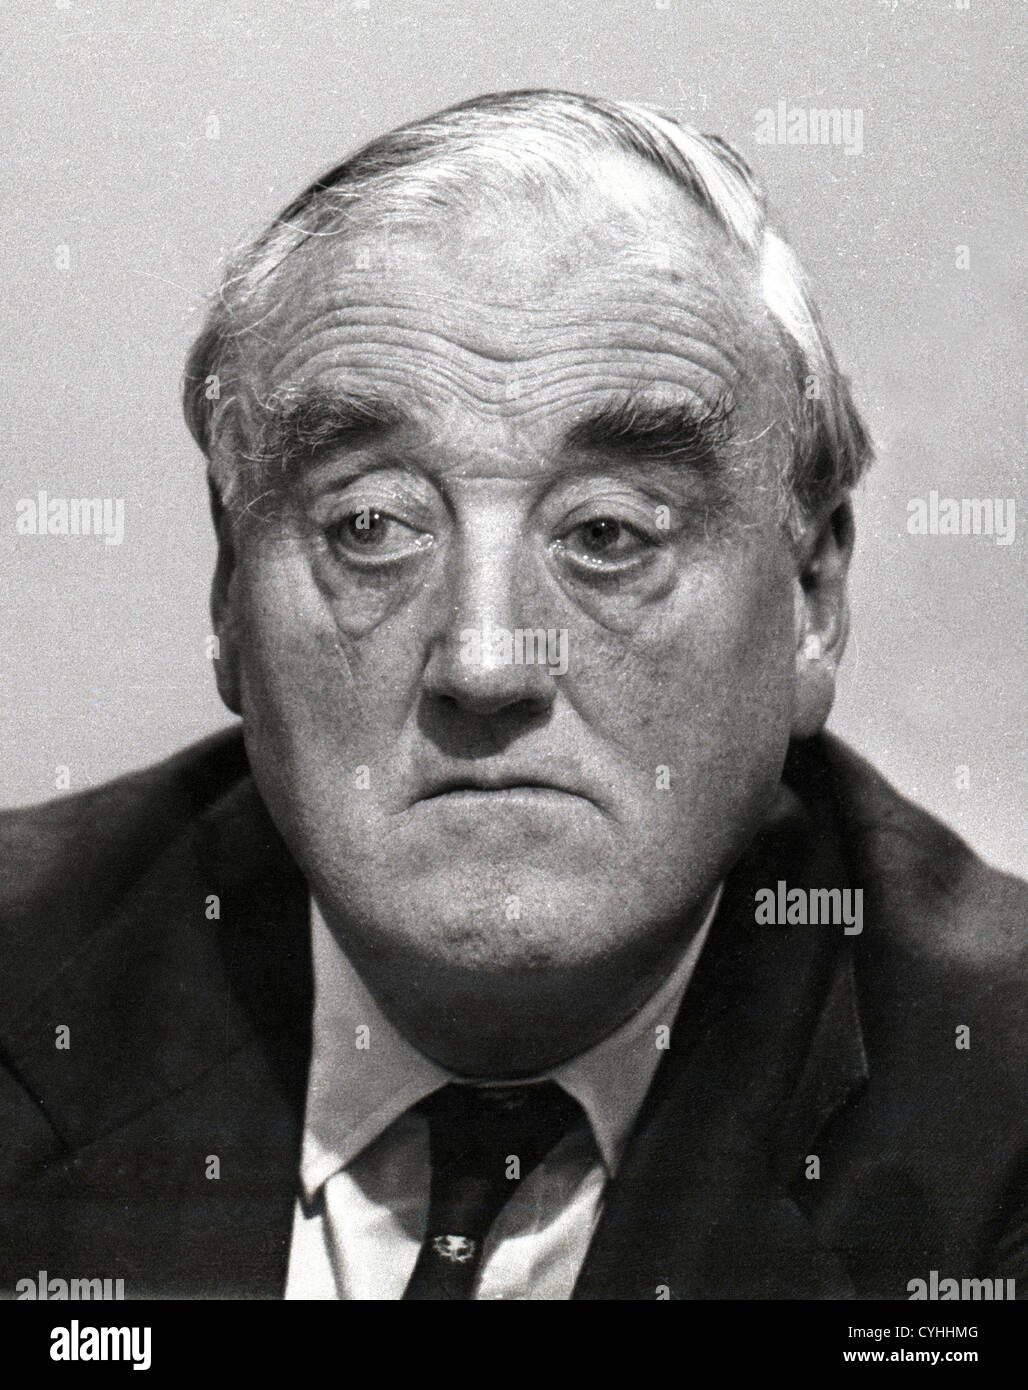 William Stephen Ian Whitelaw, 1er vicomte Whitelaw, KT, CH, MC, PC, DL, souvent connue sous le nom de Willie Whitelaw, était un homme politique conservateur britannique qui a servi dans un grand nombre de postes au Cabinet, photo de David Cole 1984 Banque D'Images